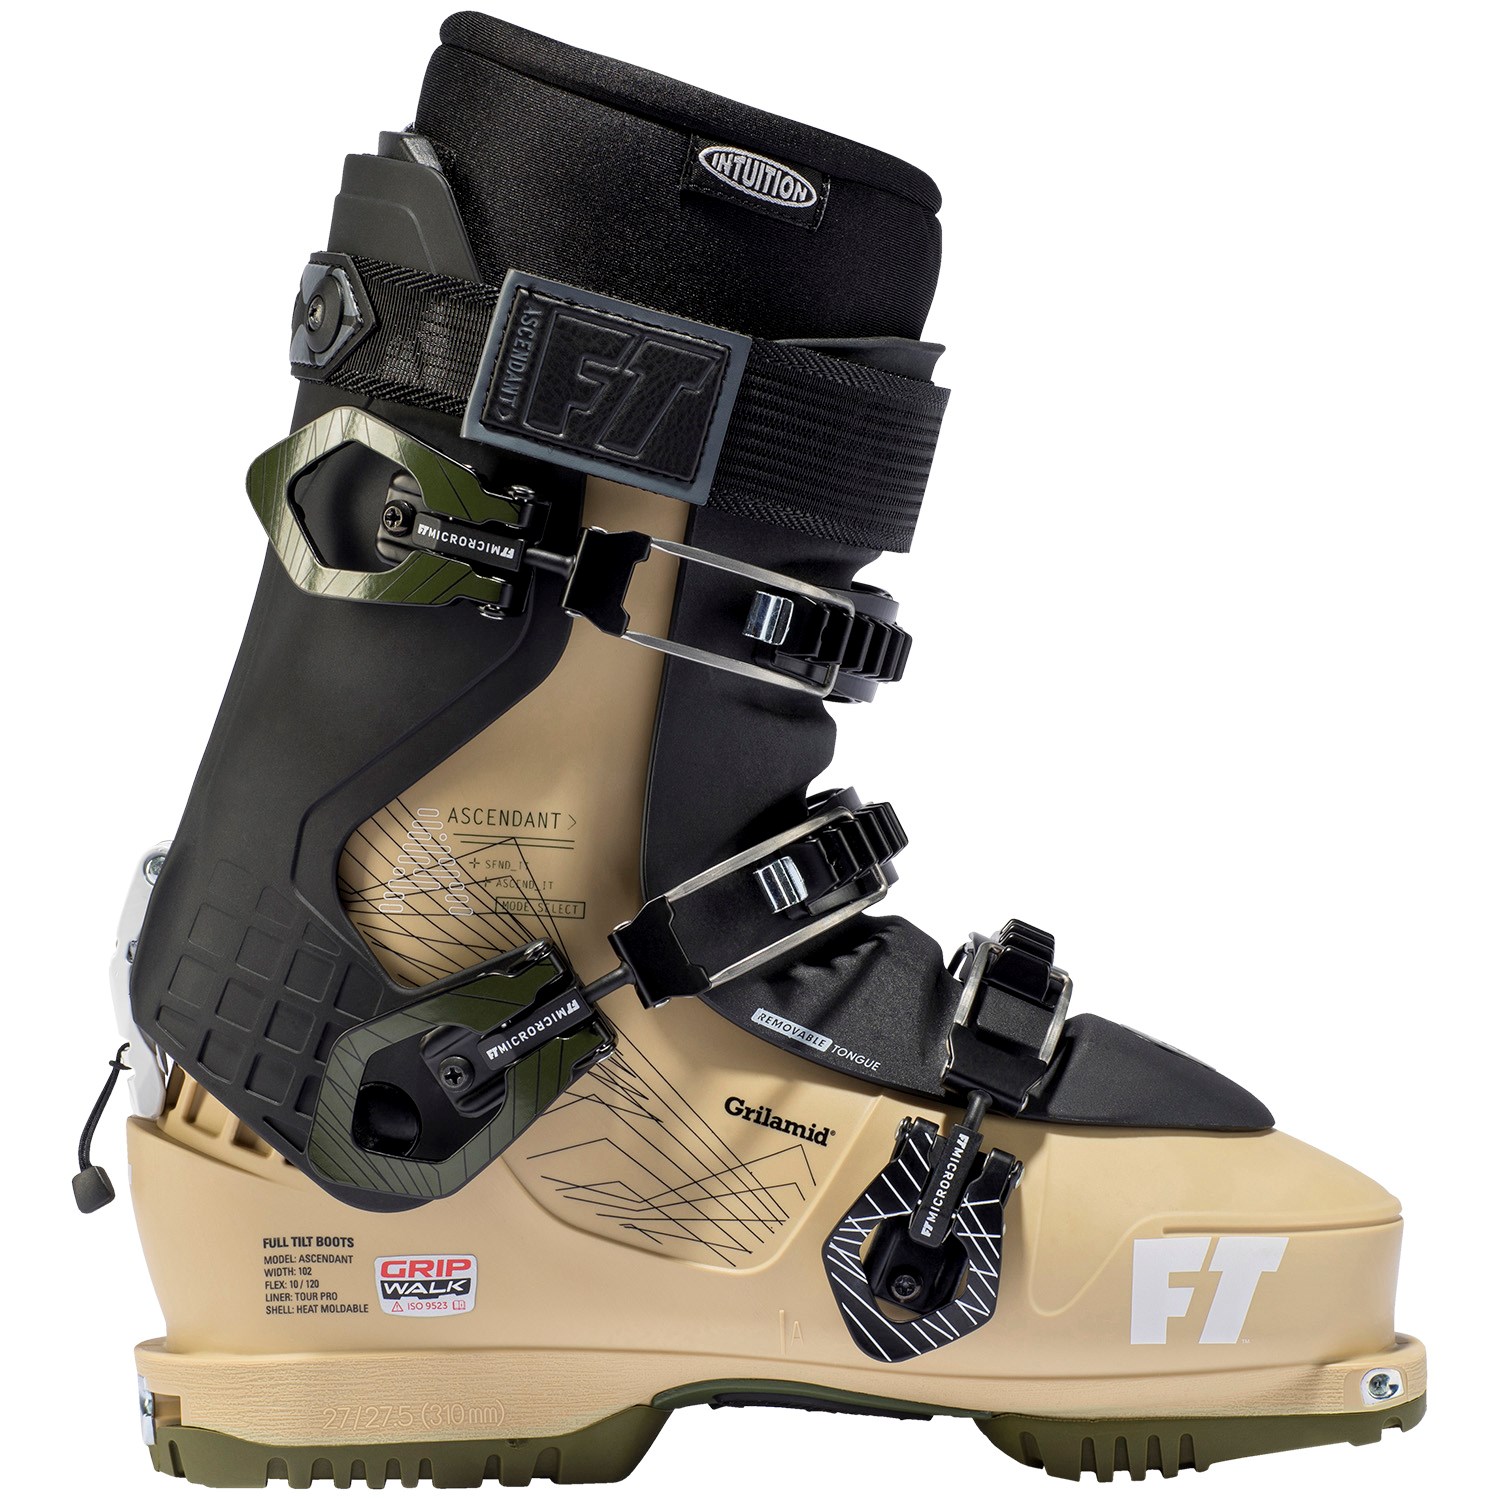 used full tilt ski boots